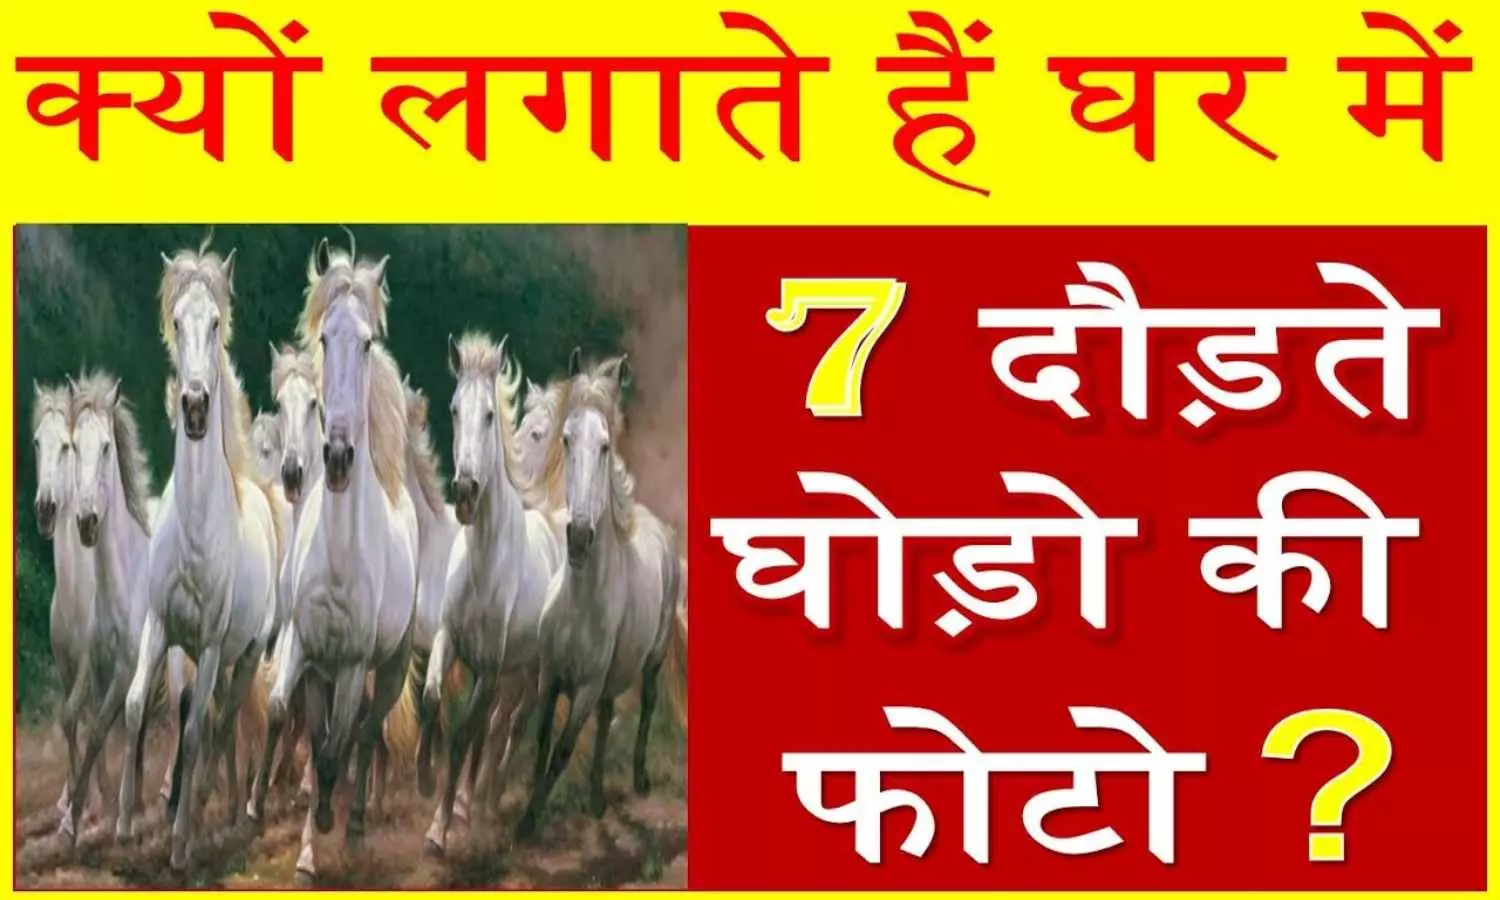 Vastu Tips: क्यों लगायी जाती है सात घोड़ों वाली तस्वीर? जानिए इसे लगानी की सही दिशा और तरीका